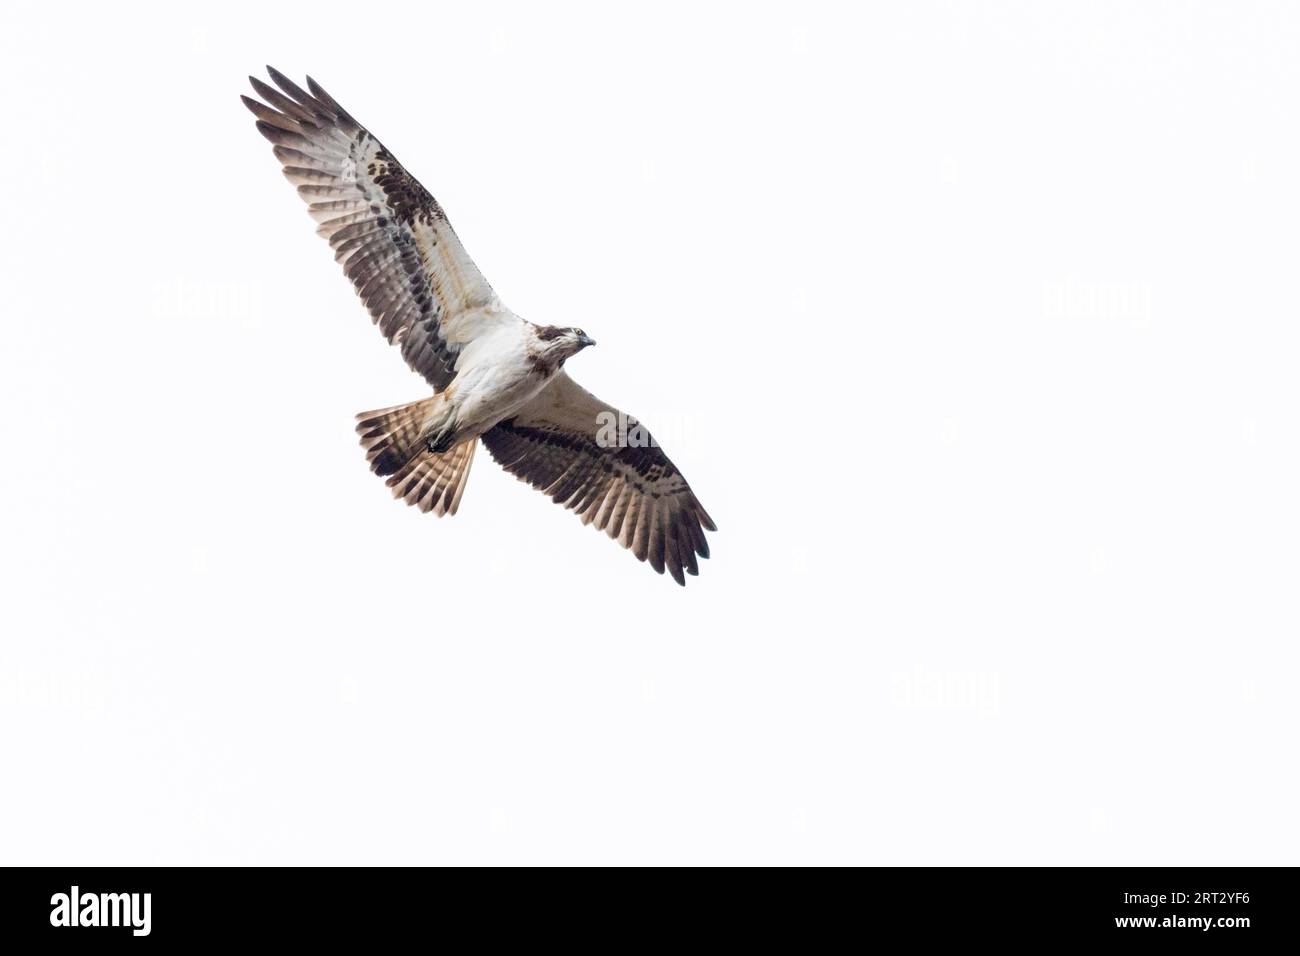 Un balbuzard volant se nourrissant au-dessus de la ferme de truites Trauntal près de Boefink, un balbuzard en vol Banque D'Images